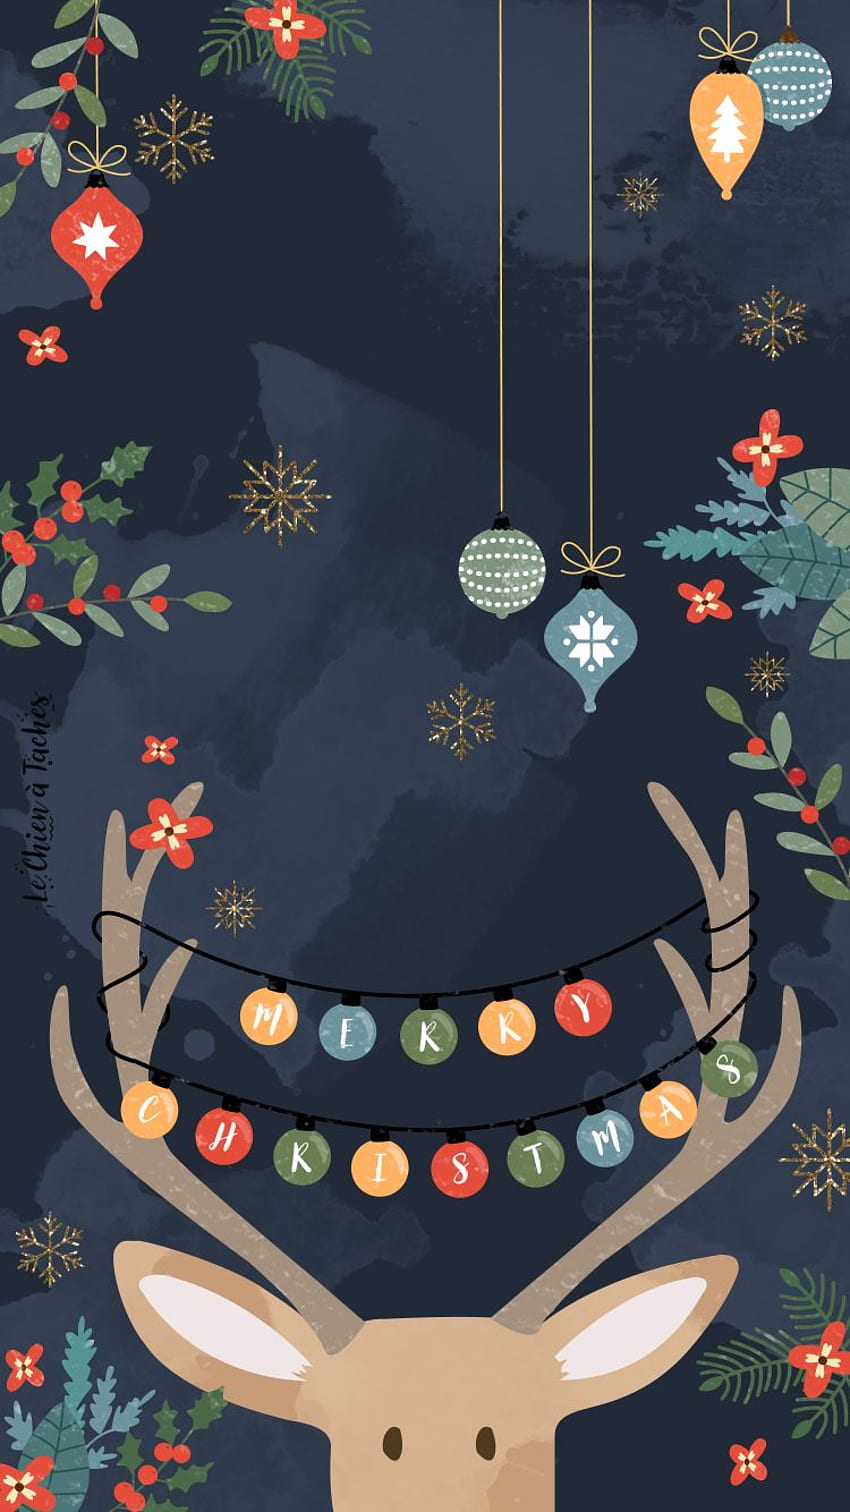 Bằng những phông nền Giáng sinh đậm chất lễ hội với đầy đủ các mẫu cho iPhone, hãy tạo cho chiếc điện thoại của bạn một phong cách lễ hội vô cùng đặc biệt đầy tươi vui cho mùa Noel này. Hãy để những chuỗi đèn lung linh và những chú tuần lộc đem đến nhiều niềm vui cho bạn.